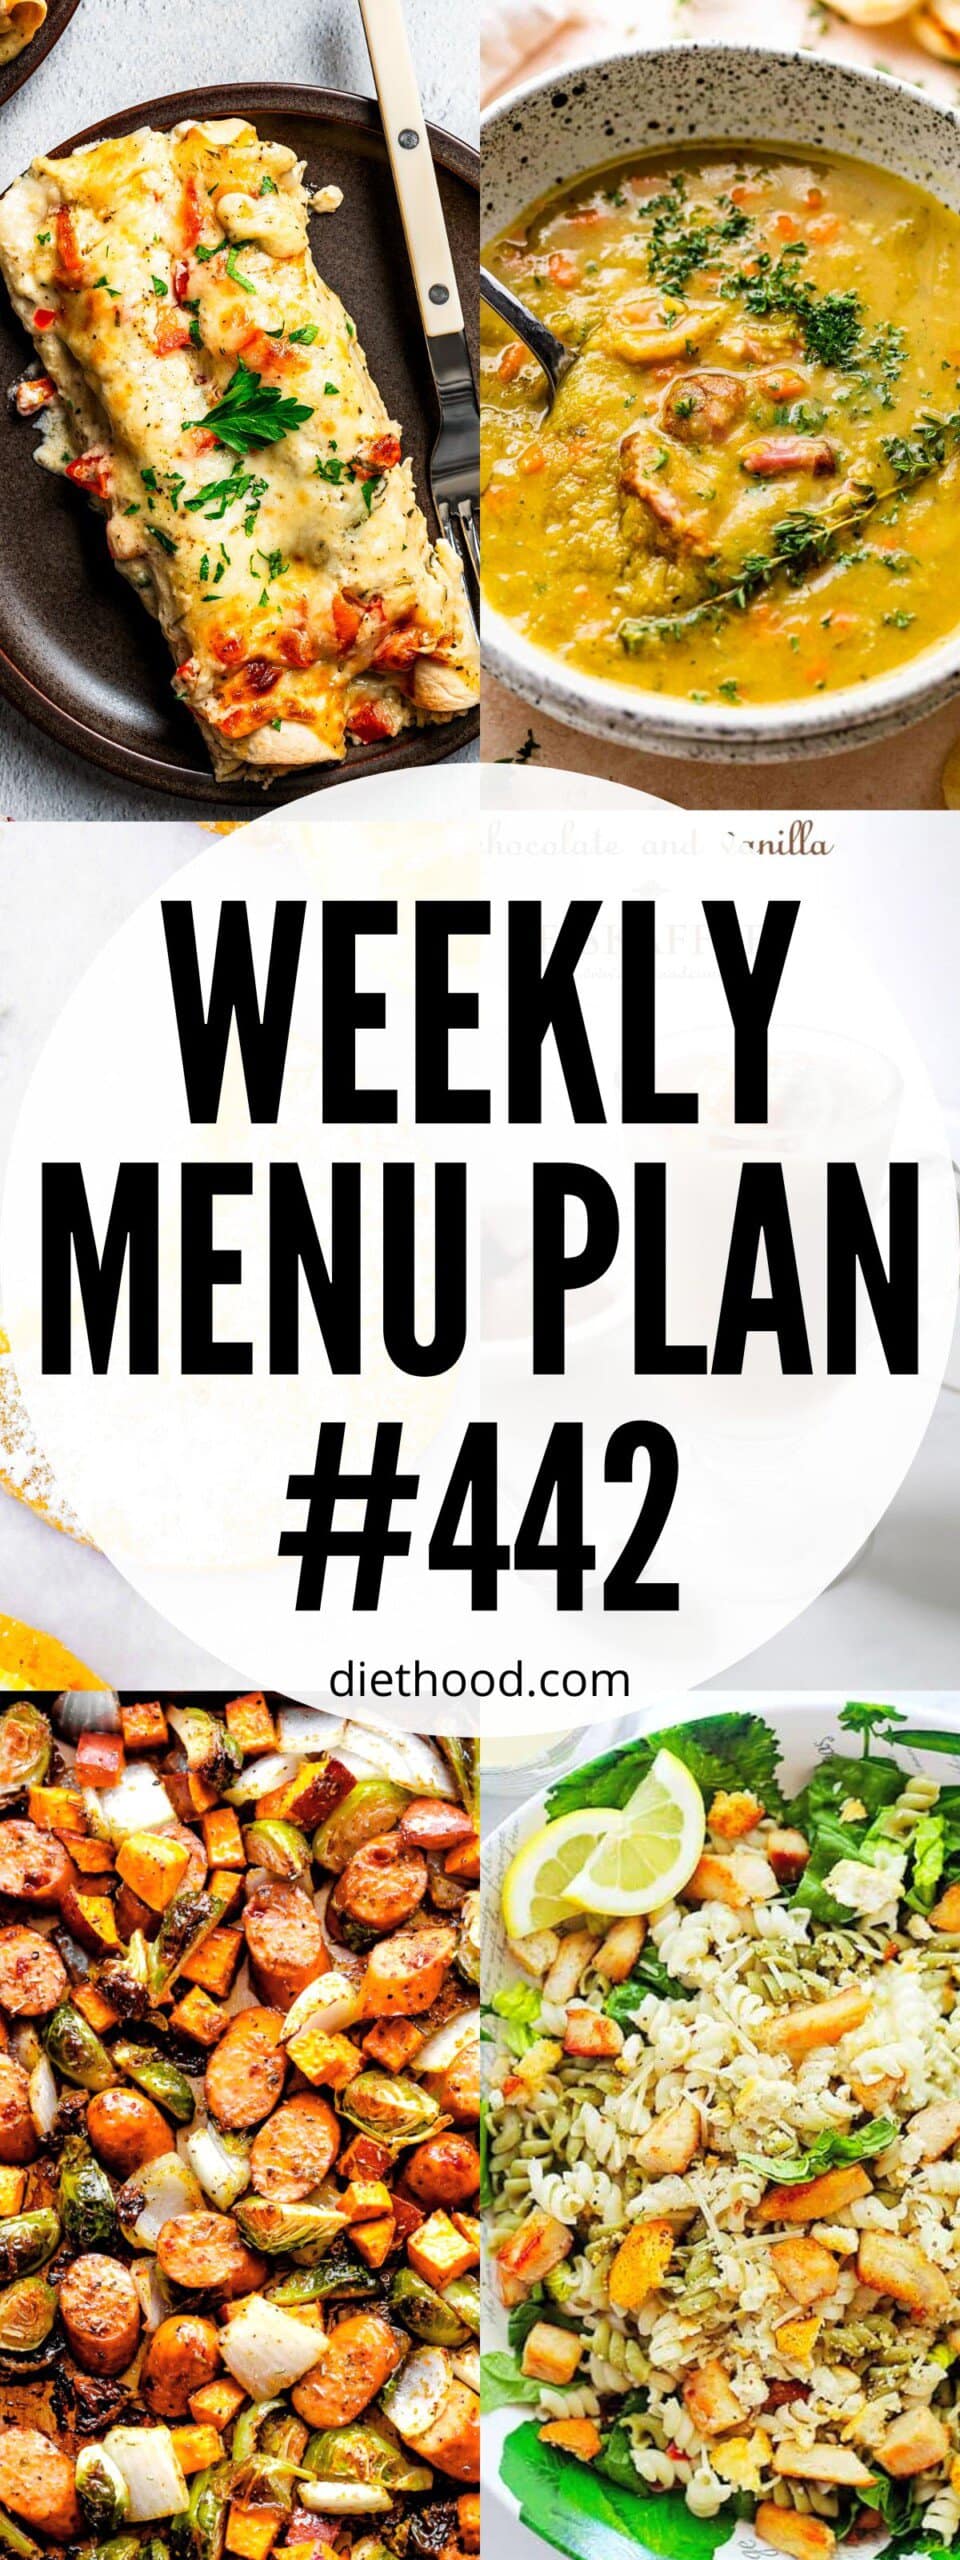 Weekly Menu Plan 442 six image collage Pinterest image.